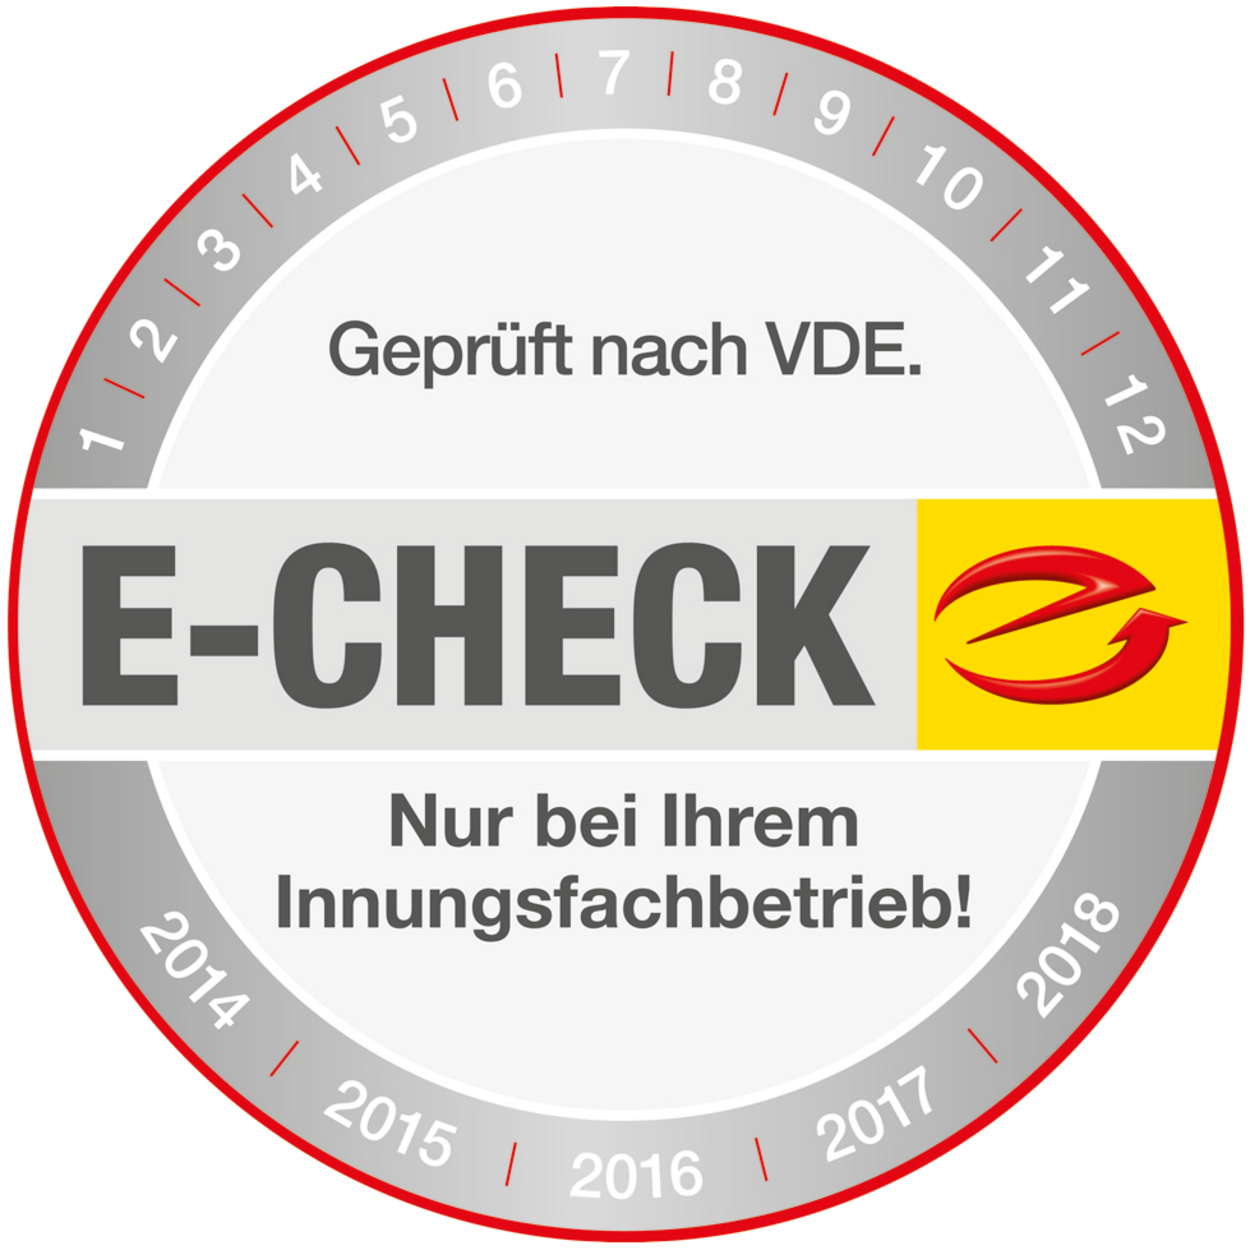 Der E-Check bei Elektrotechnik Süß GmbH in Marburg